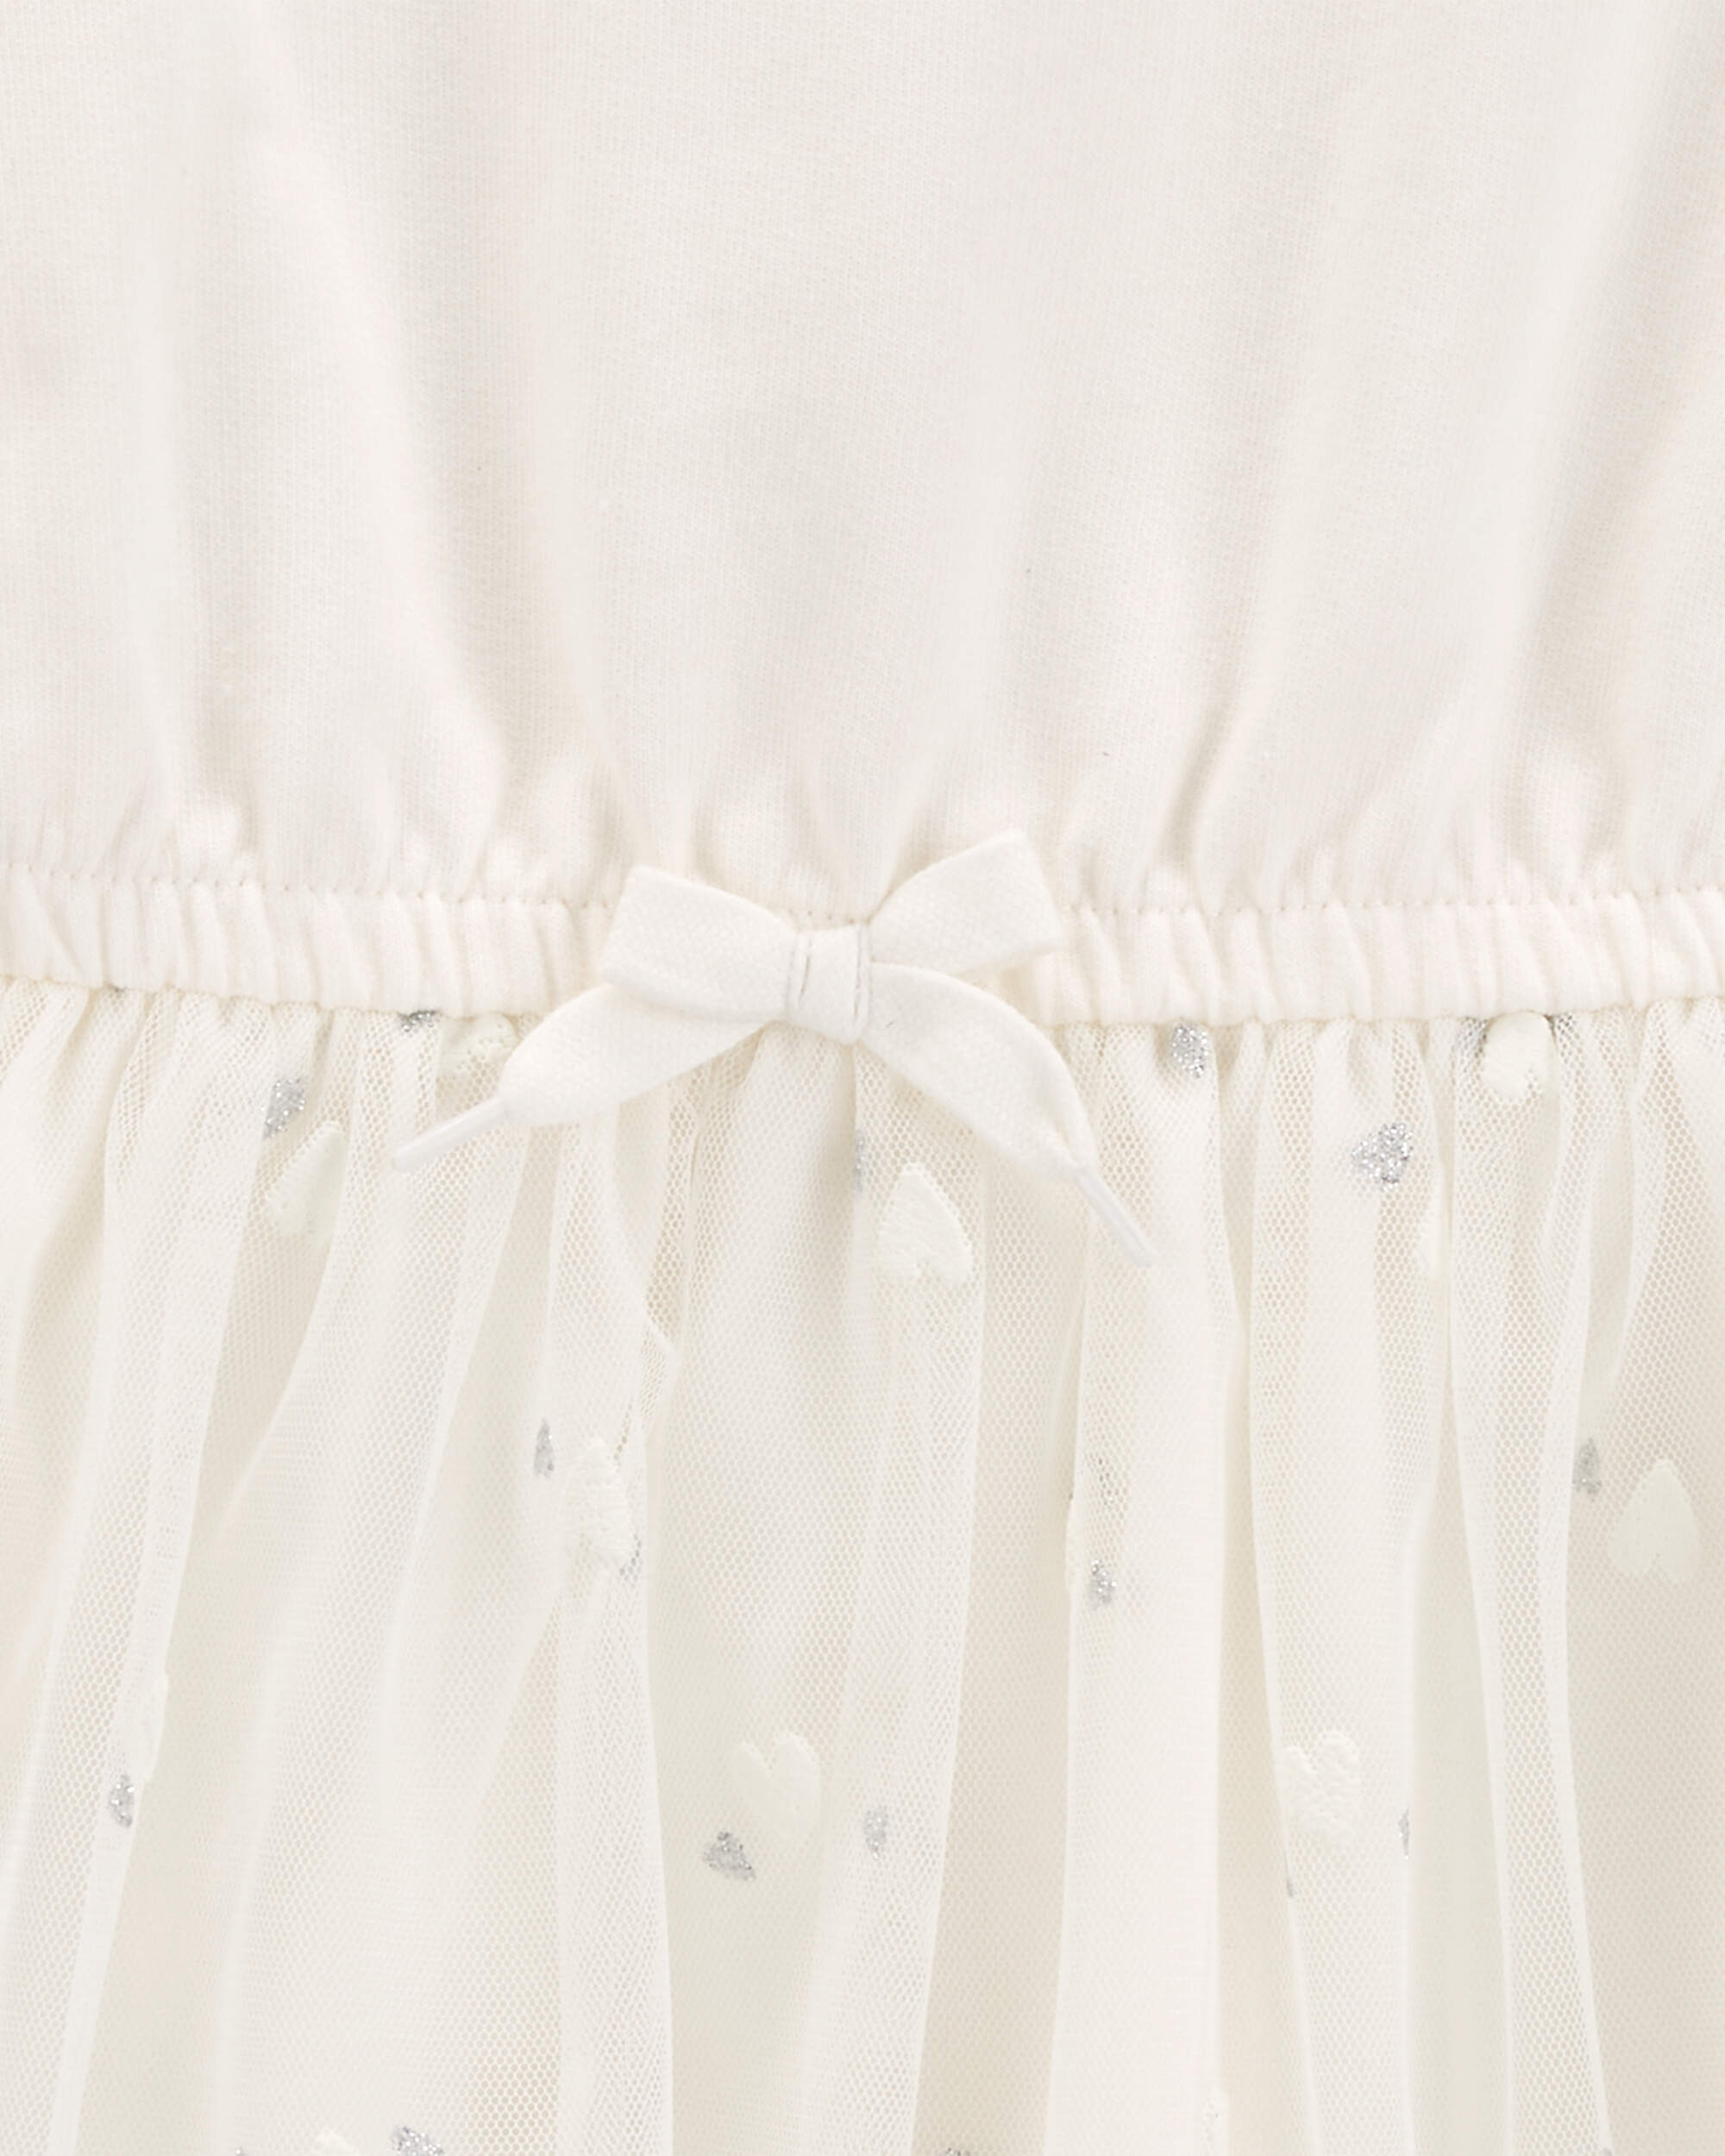 Toddler Glitter Long-Sleeve Cotton Dress